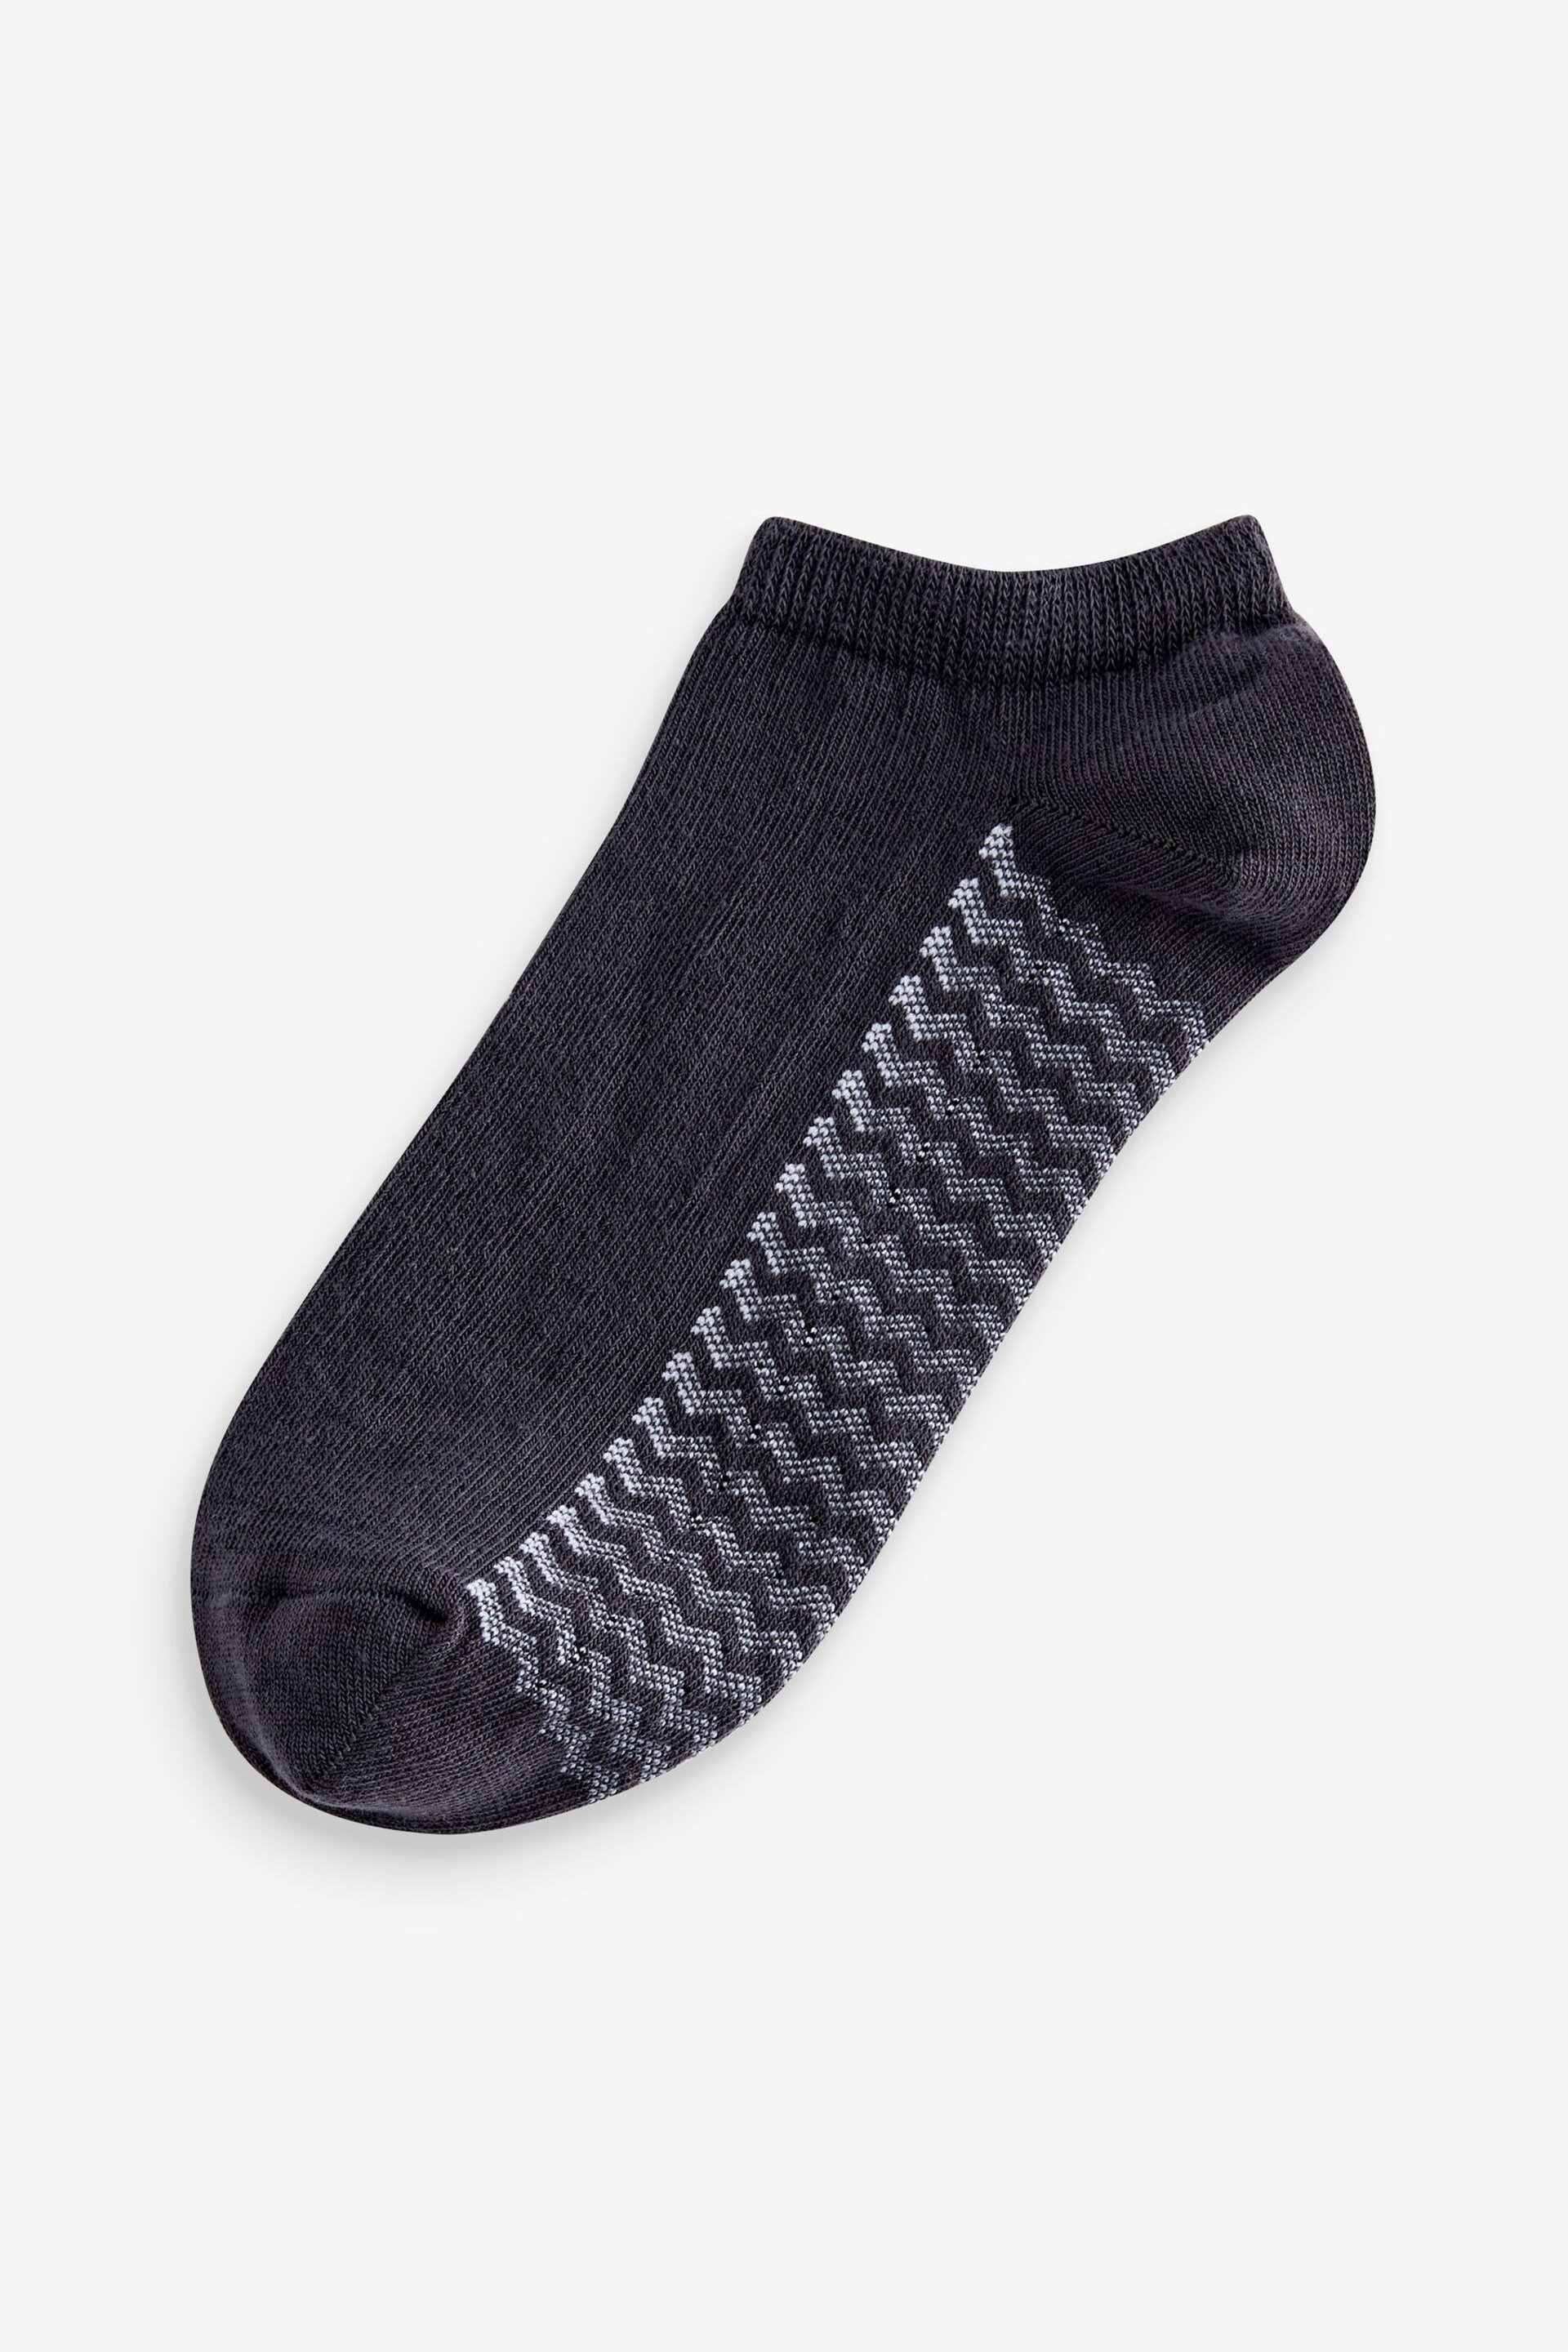 White/Grey/Black Zig Zag 6 Pack Trainer Socks - Image 5 of 9